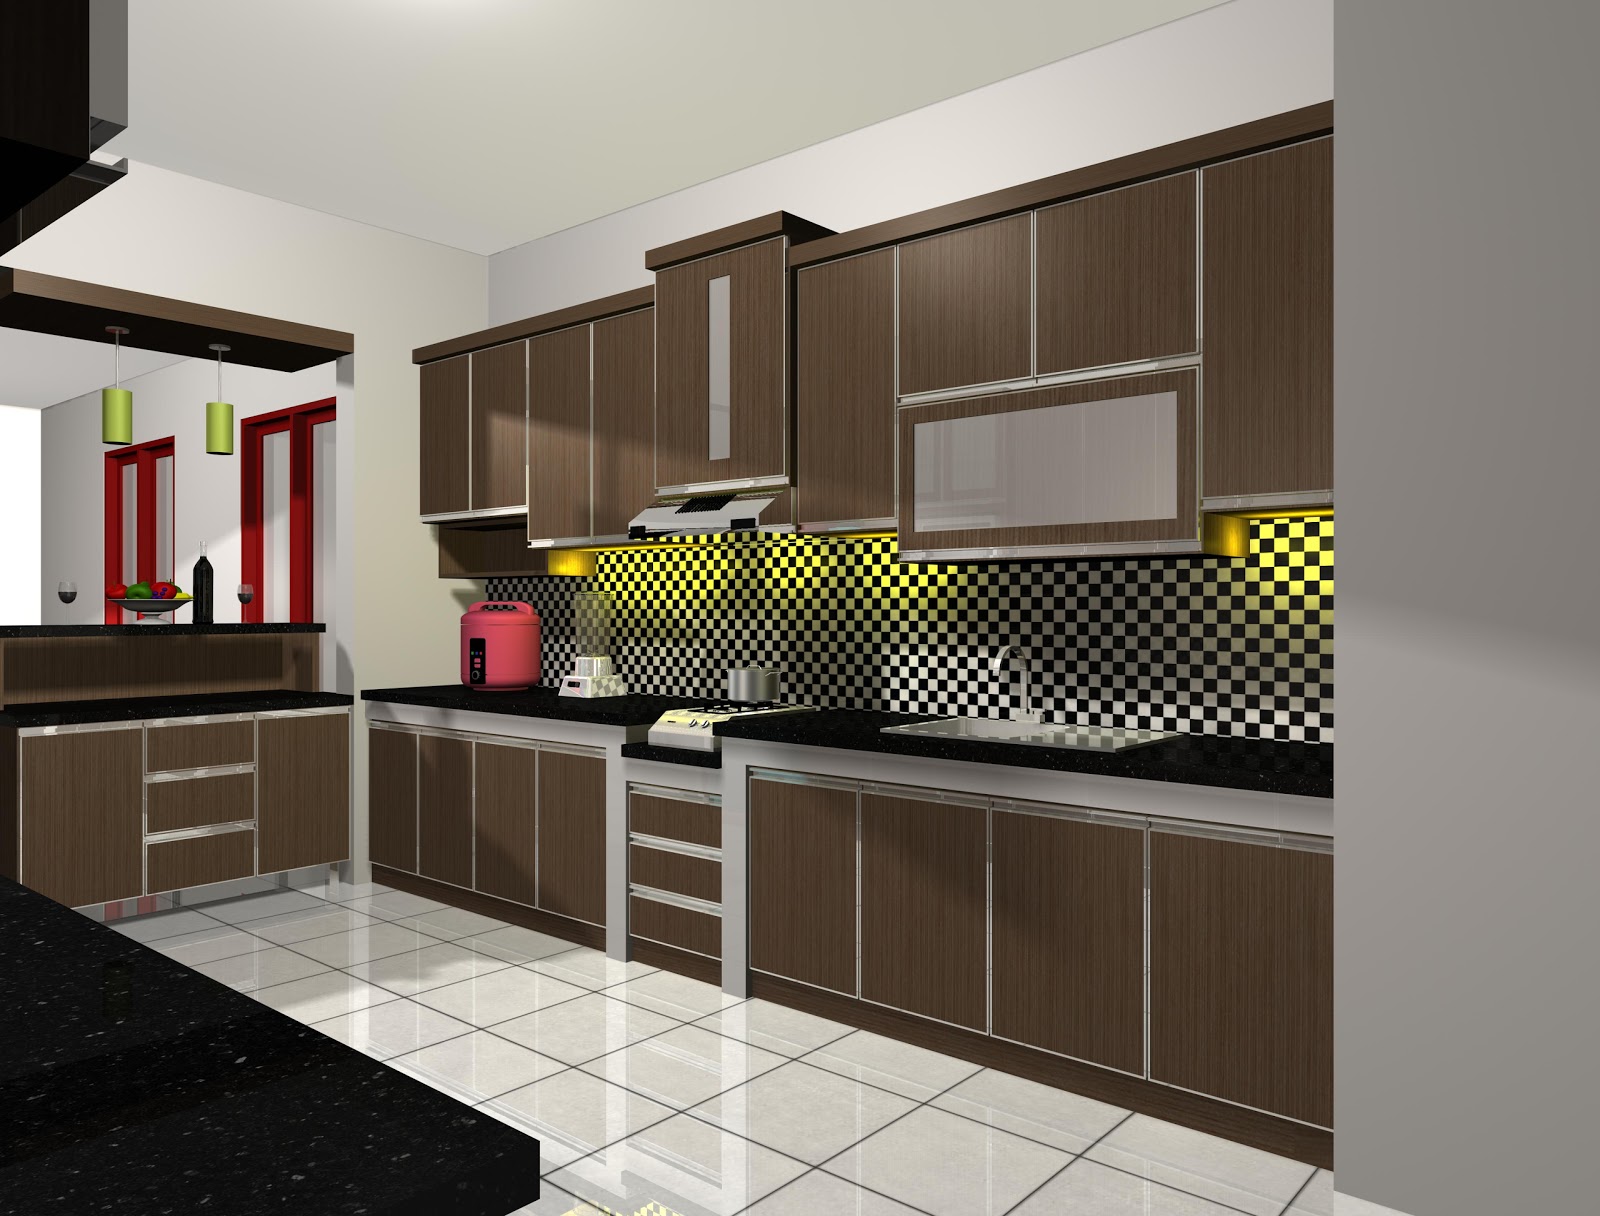  Desain  Interior  Dapur  Rumah Sederhana Rumah Minimalis